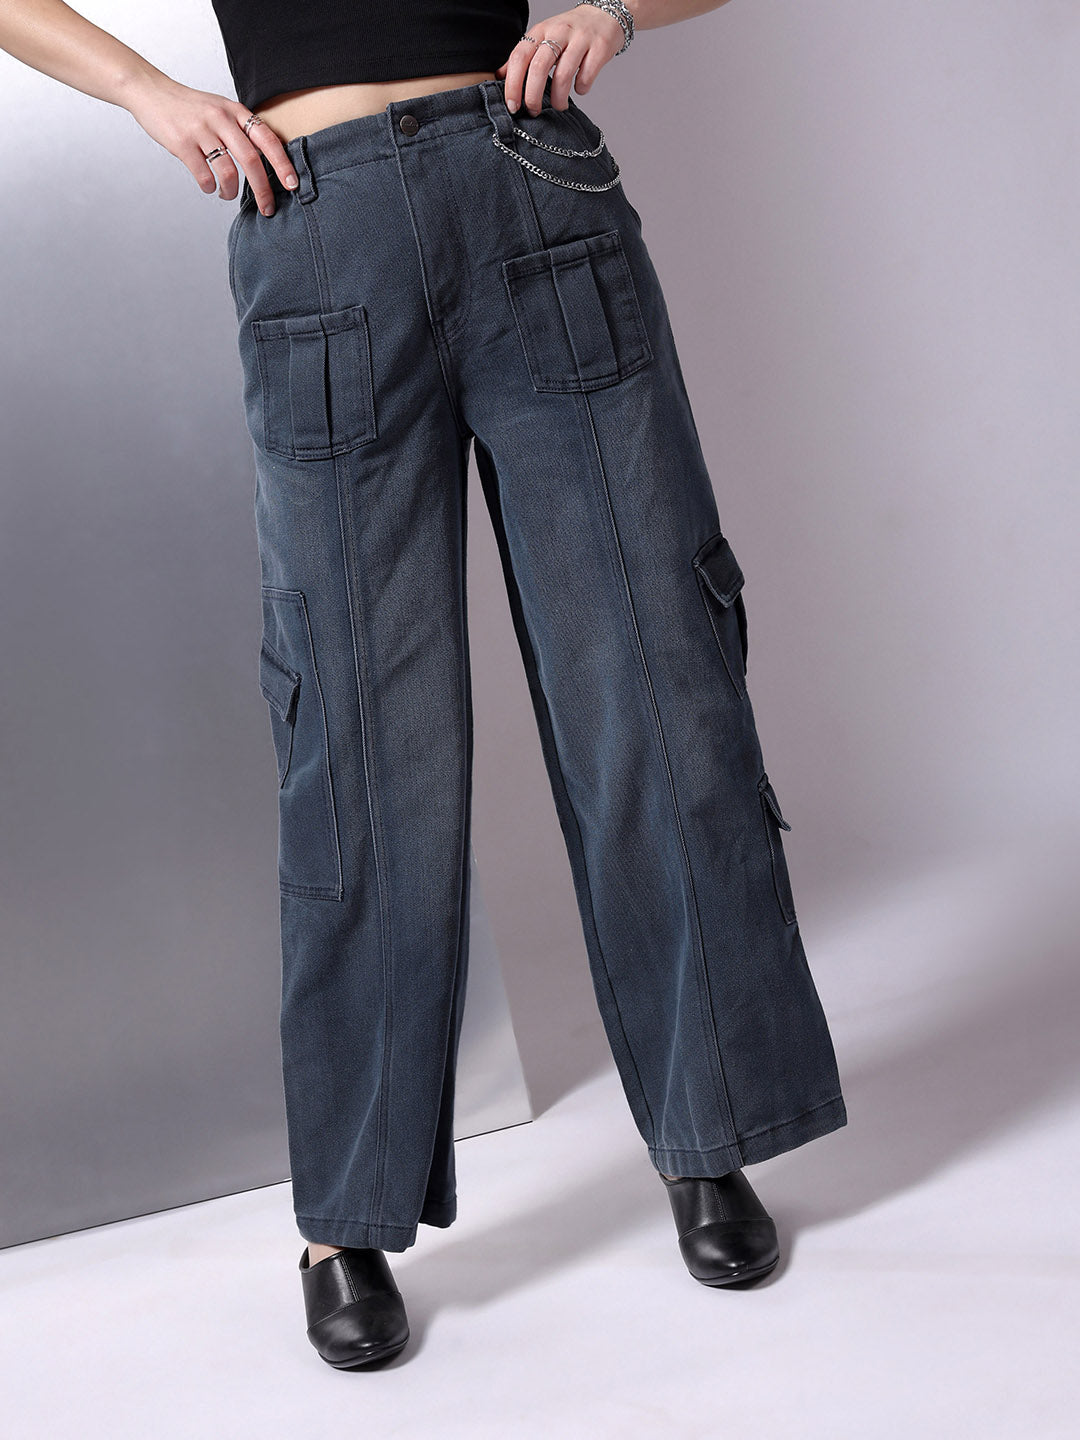 Shop Women Flared Jeans Online.